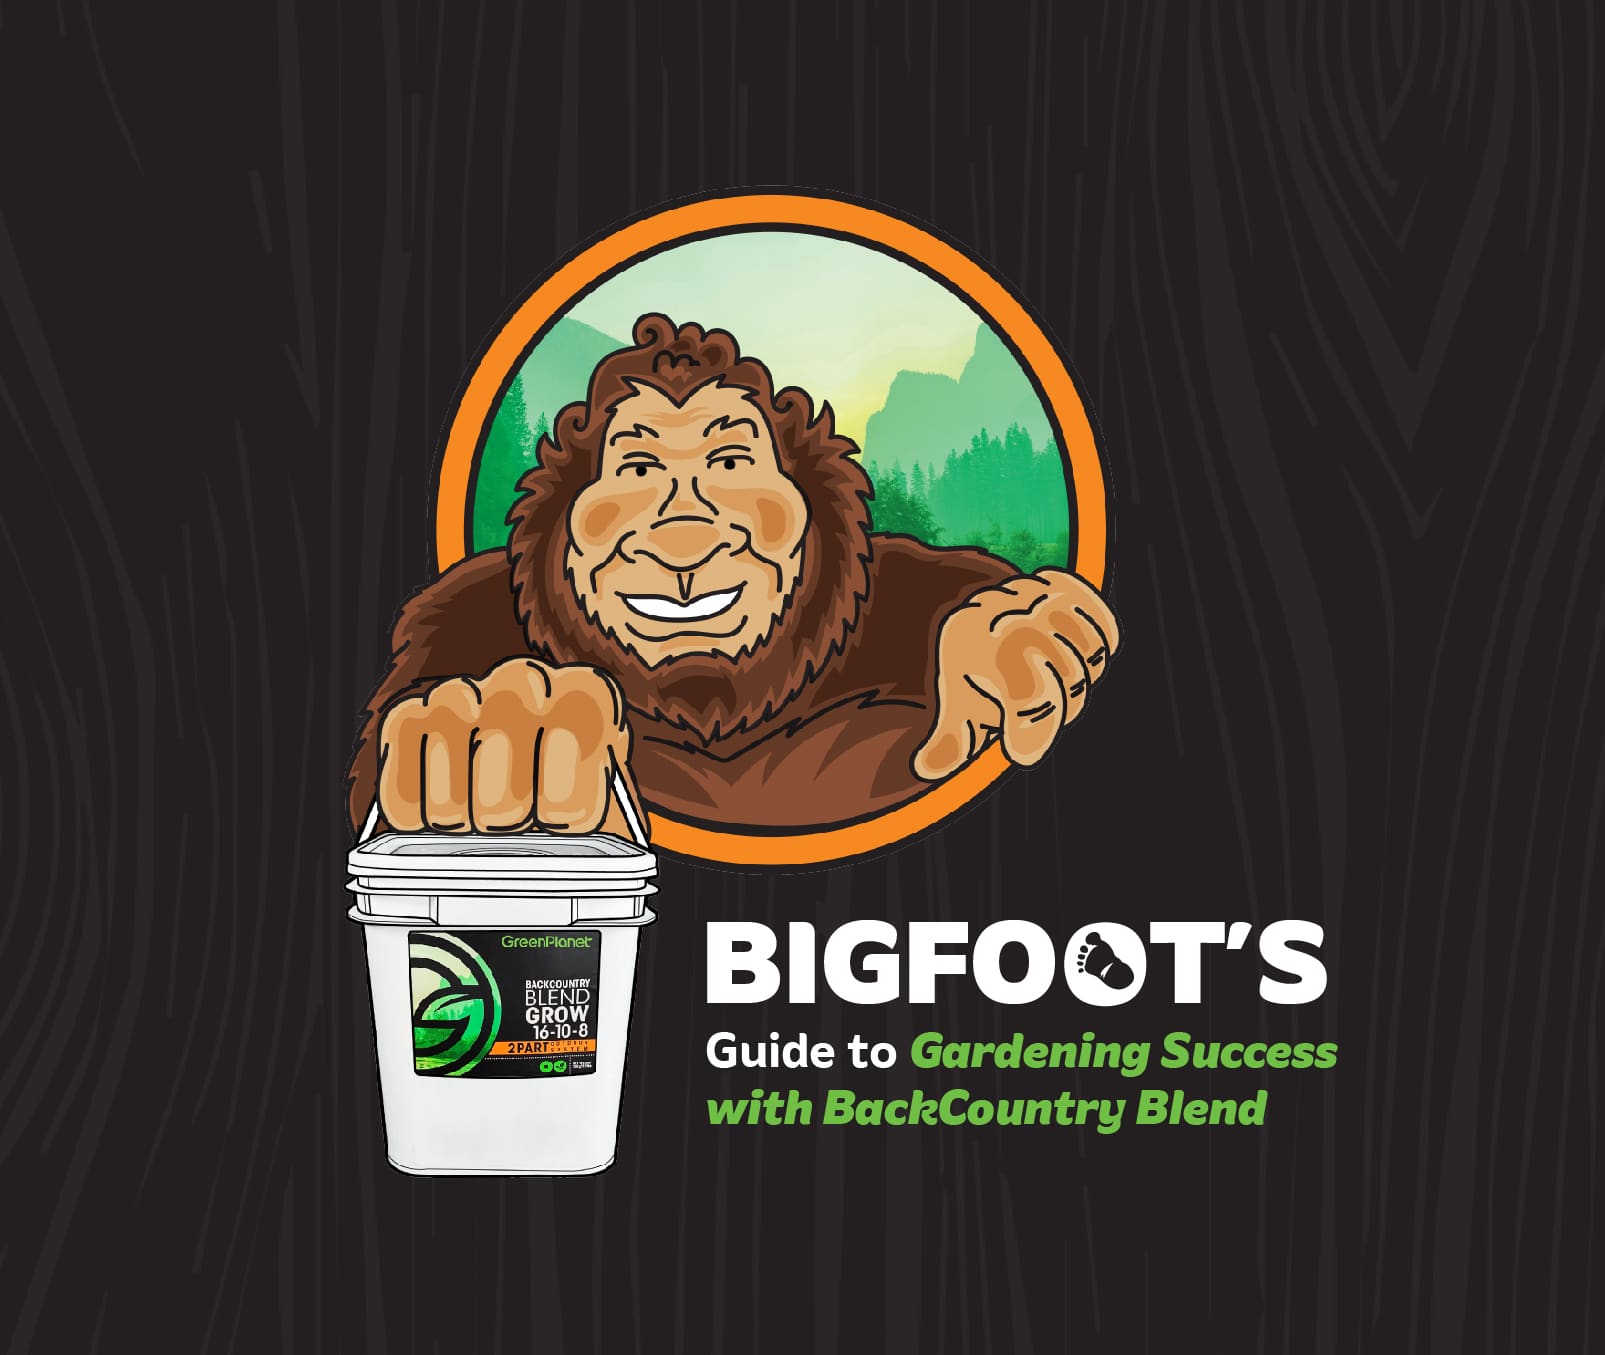 03 21 GPN PD SOCIAL Bigfoot Retires Blog Header image 01